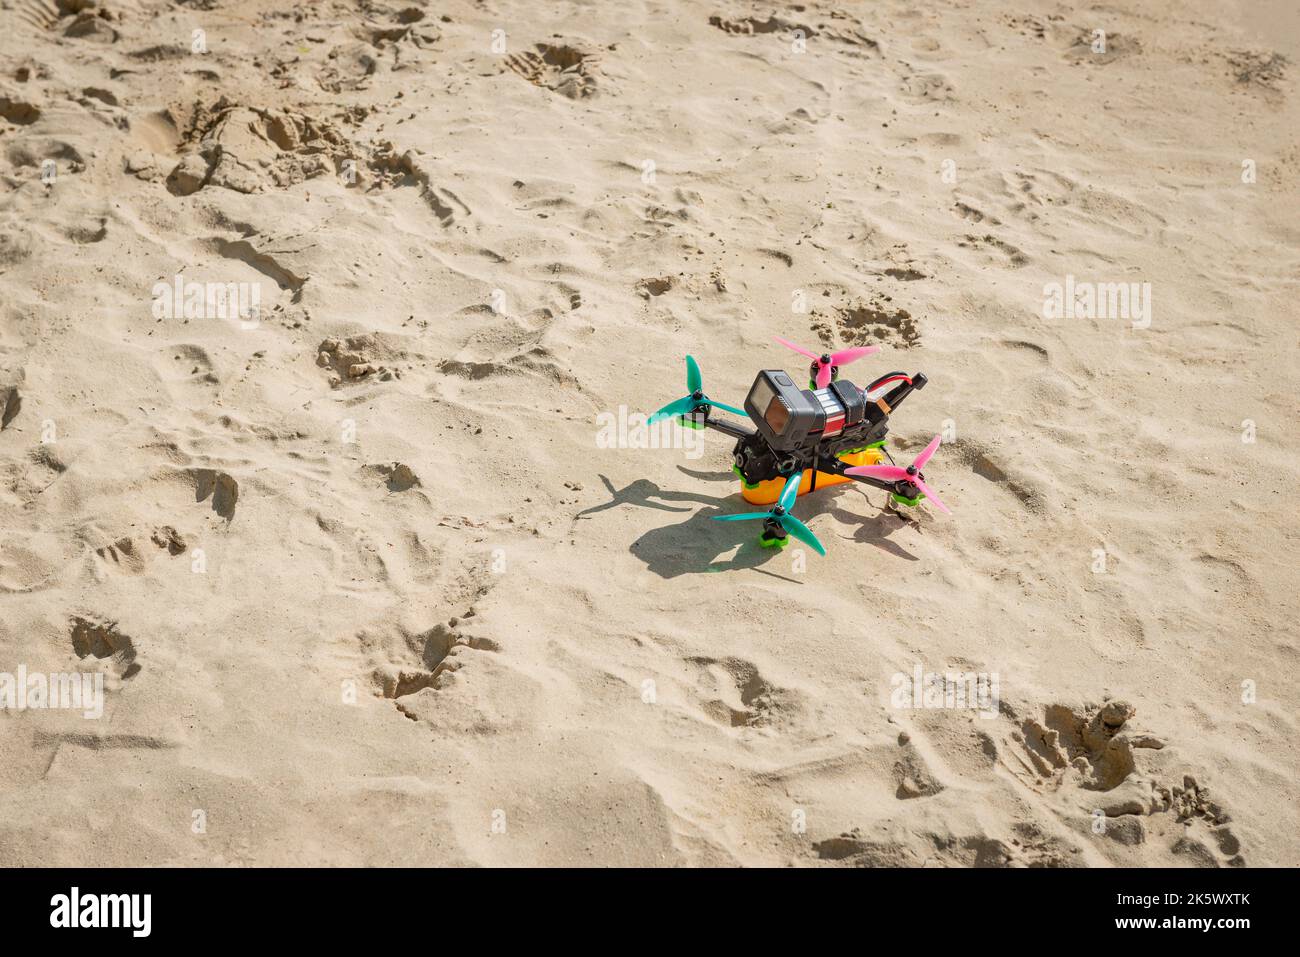 FPV drone première personne plage sable prêt lever Banque D'Images